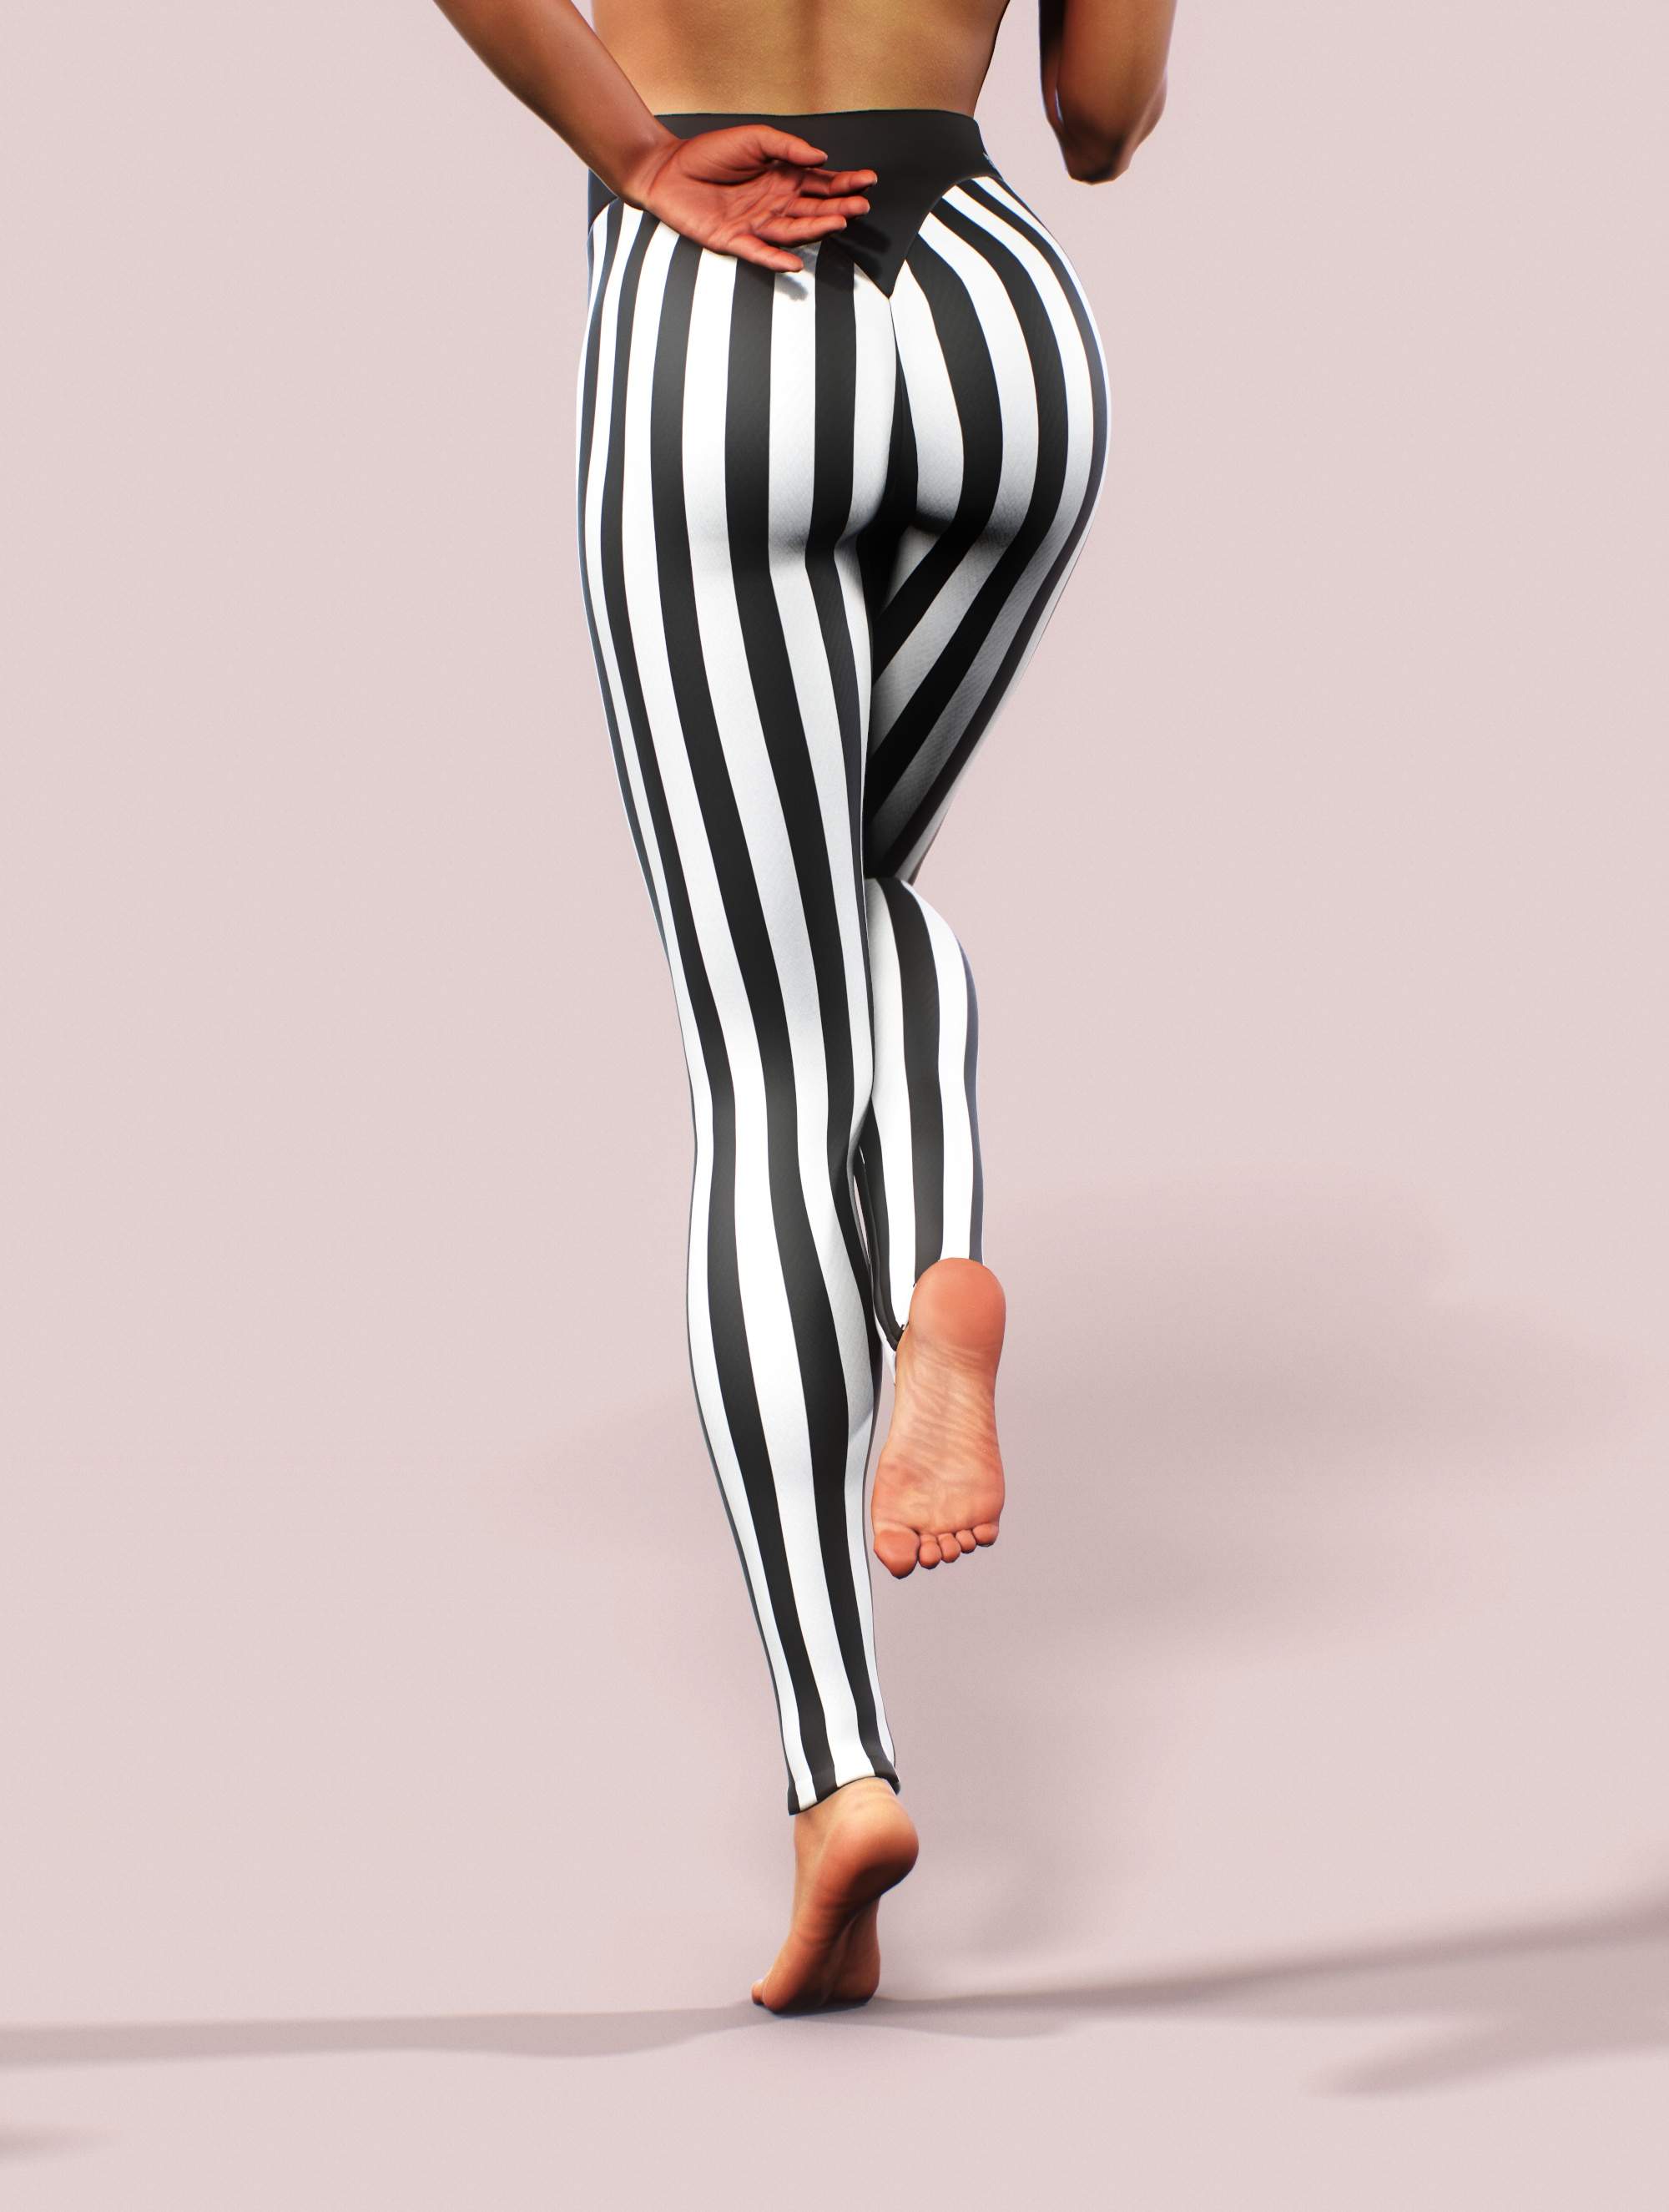 11 Lines Black and White RegiaArt - Leggings, polyester, spandex